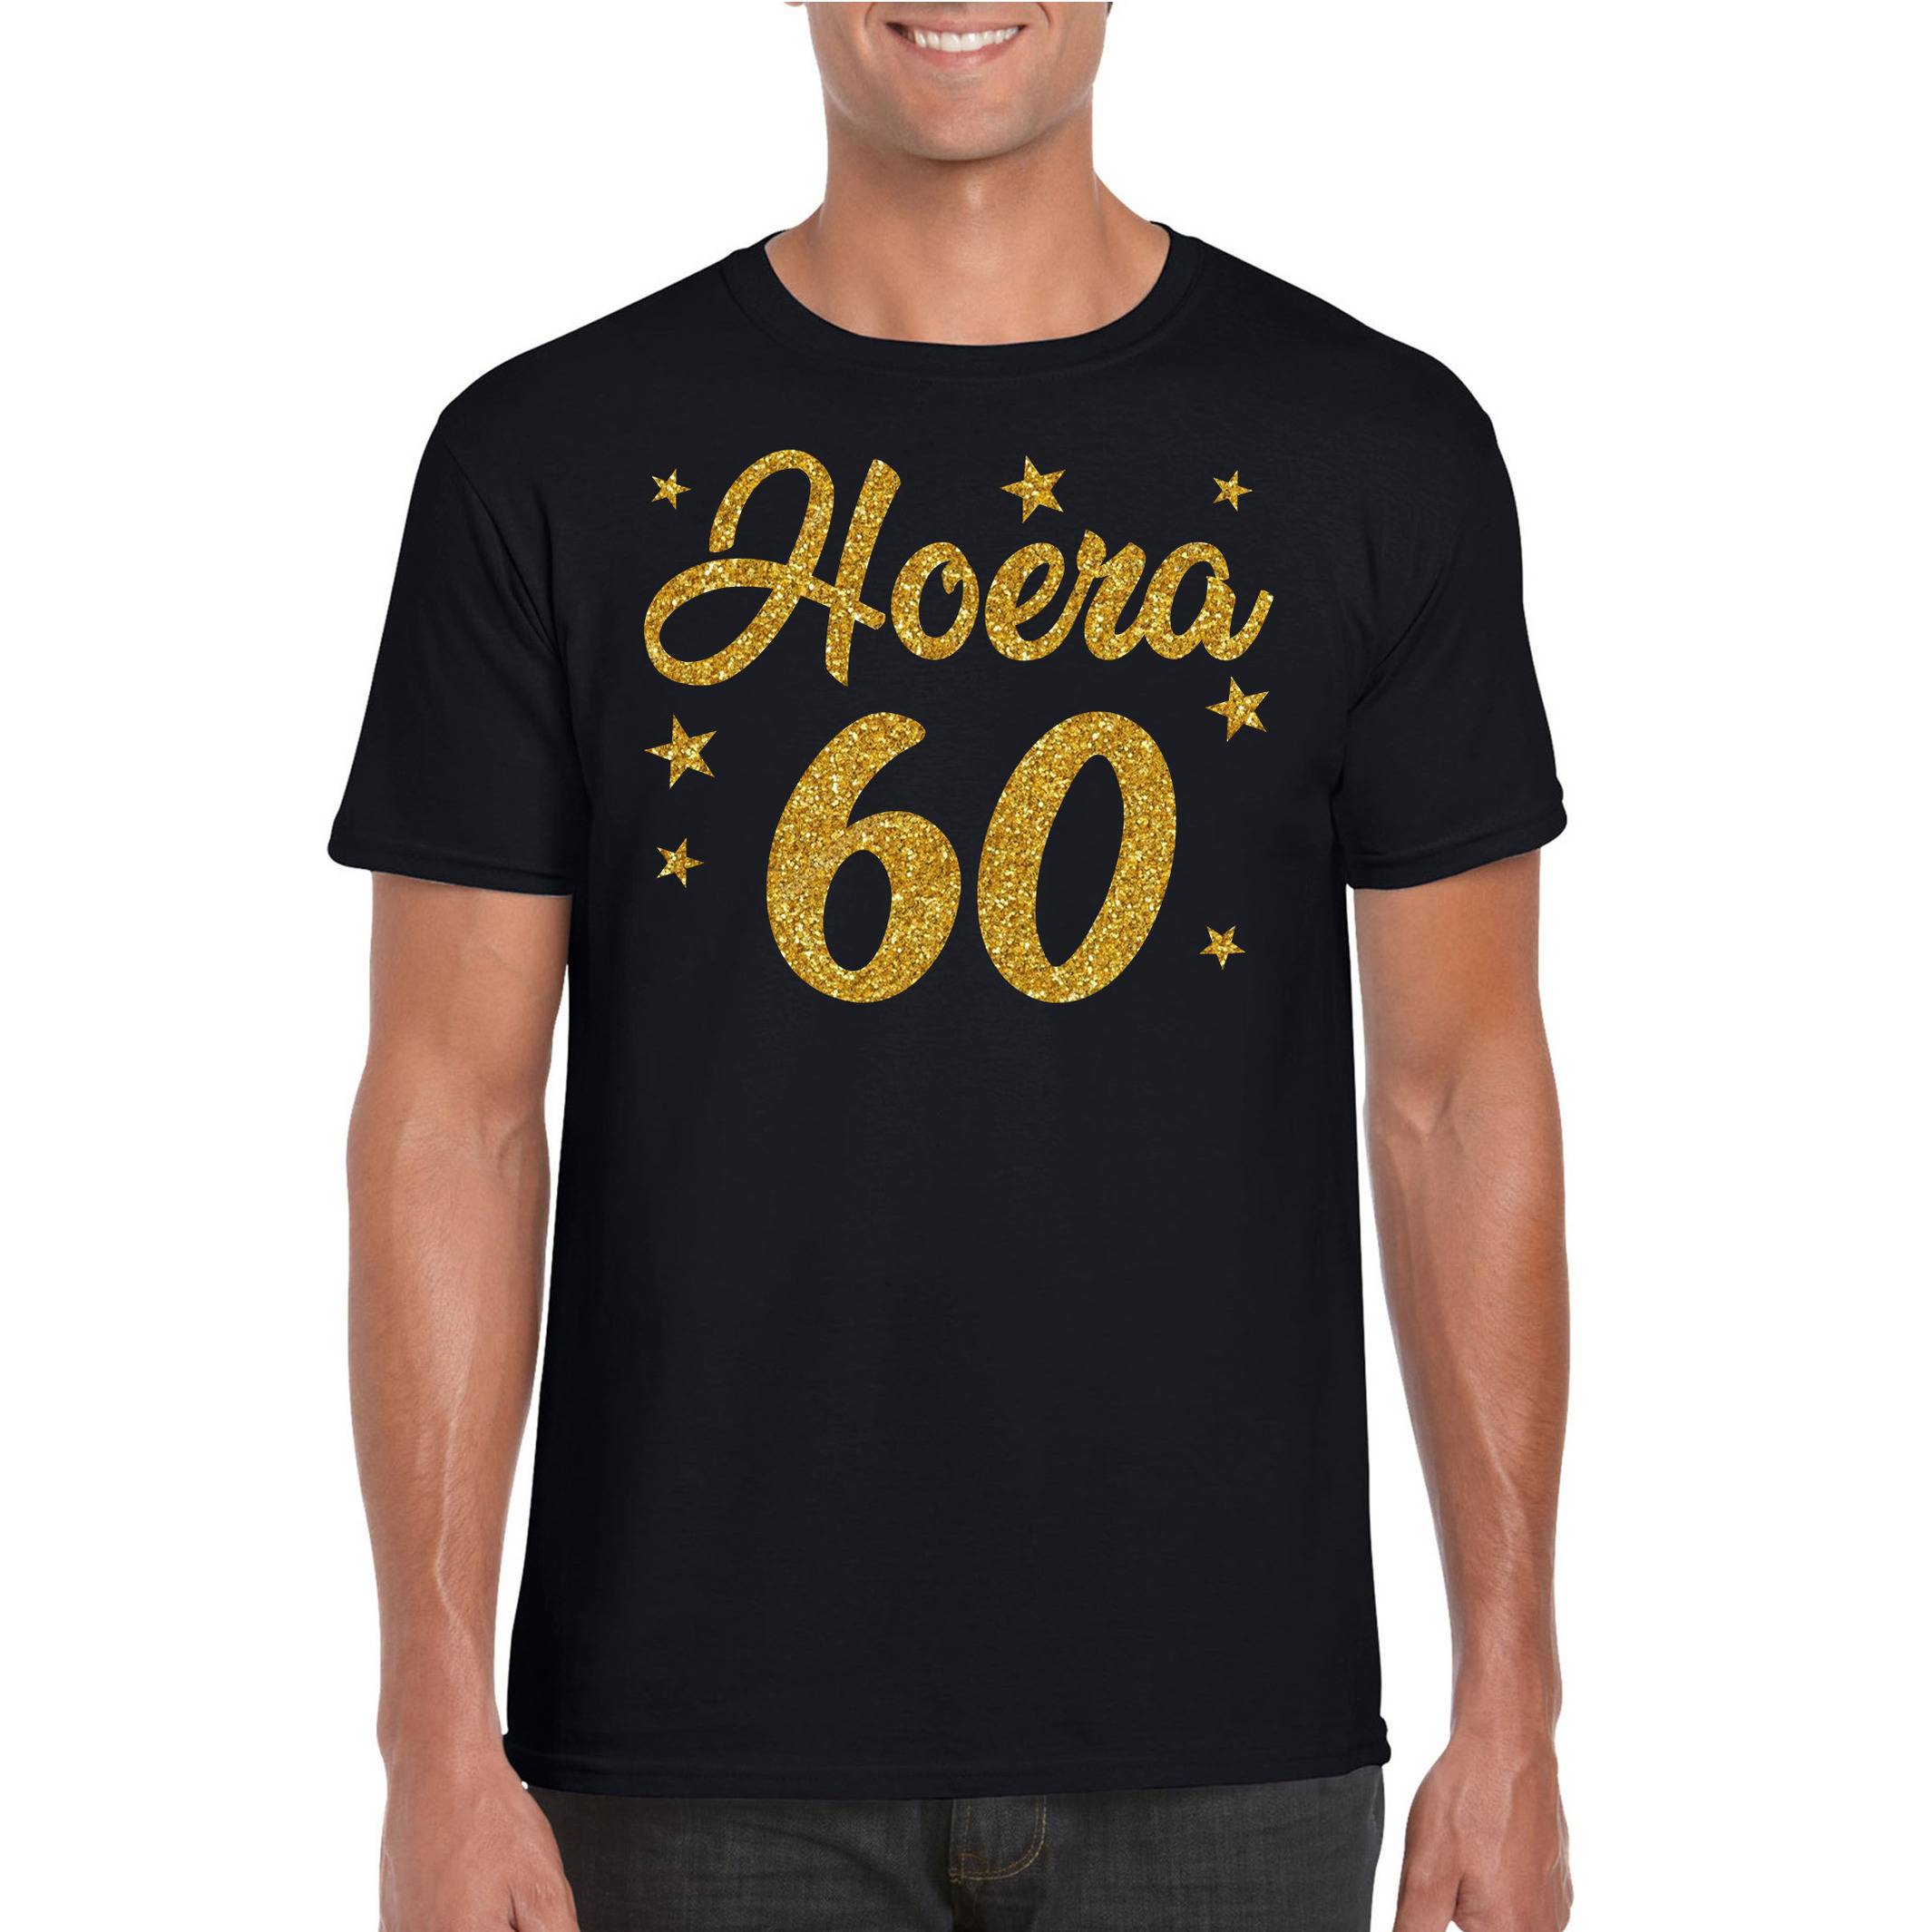 Hoera 60 jaar verjaardag cadeau t-shirt goud glitter op zwart heren